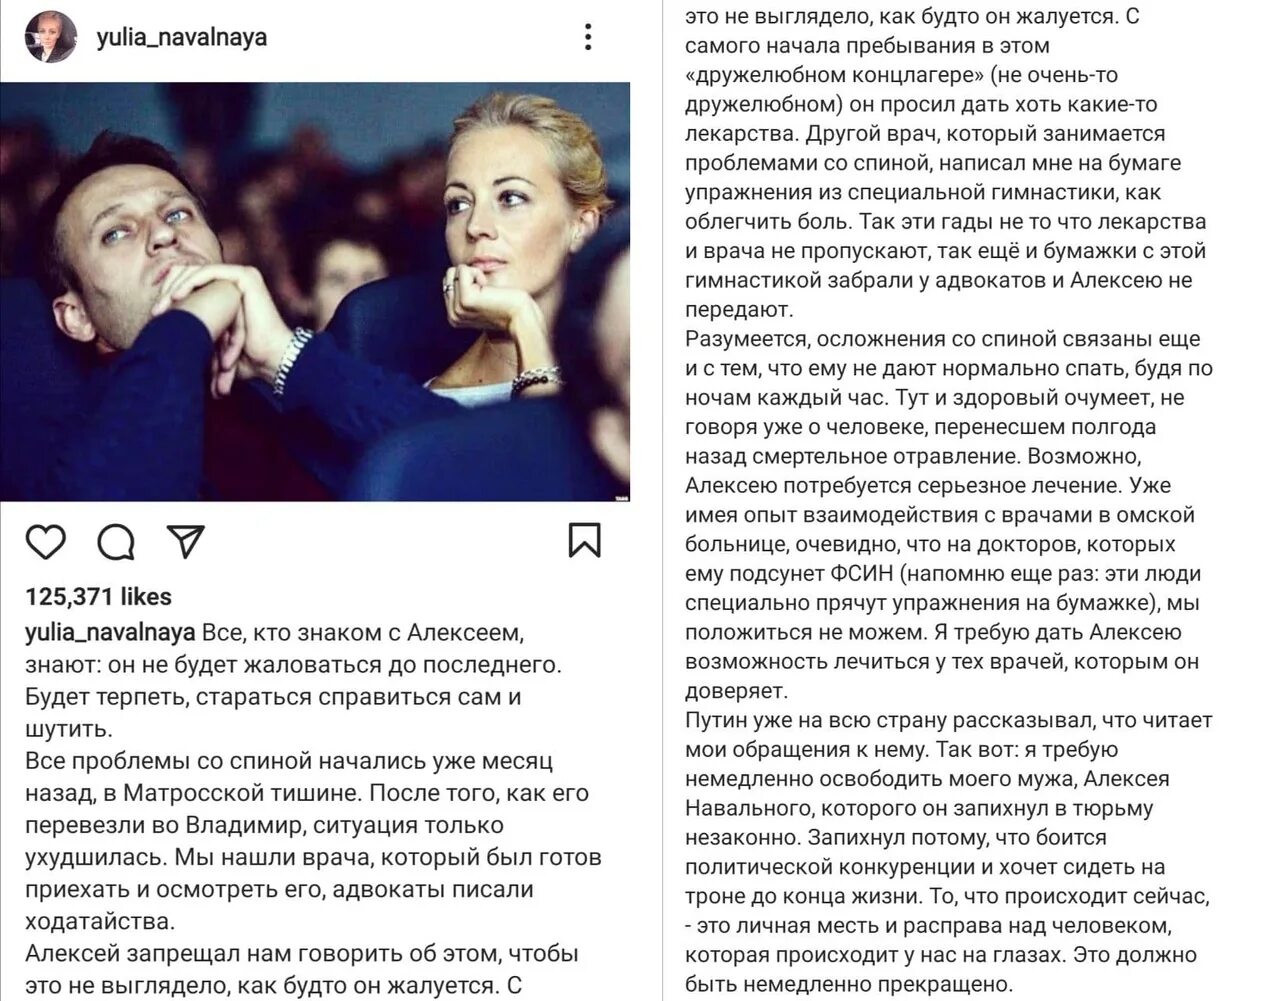 Мать навального обратилась к юлии навальной